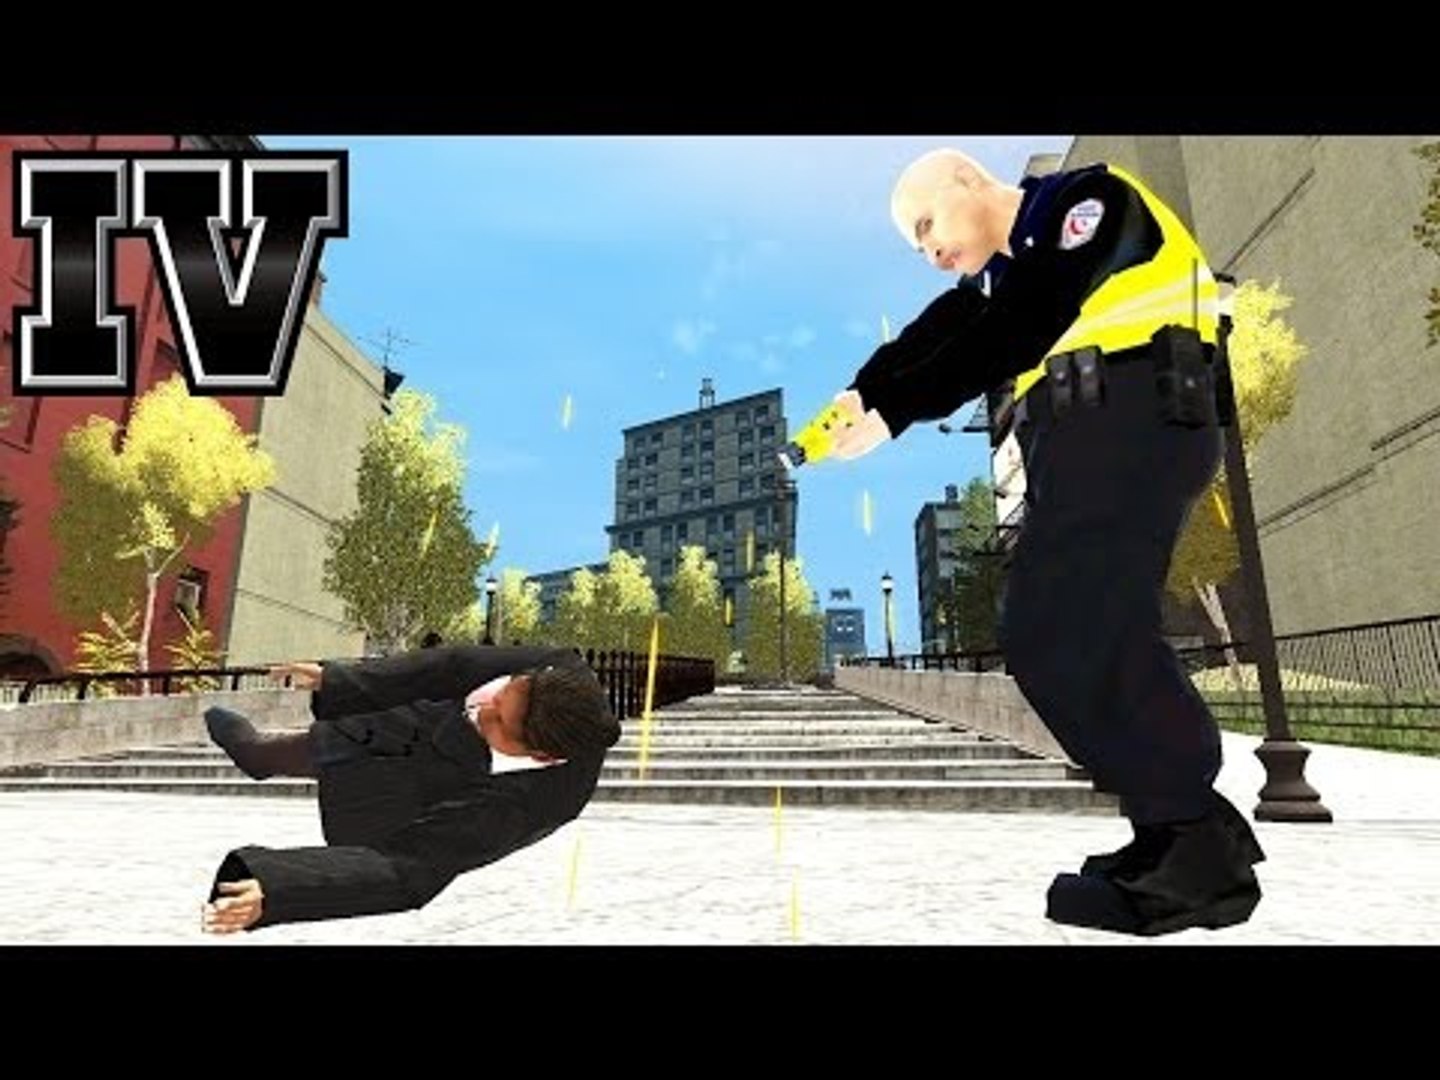 GTA IV: GUN TASER FOR POLICE - video Dailymotion